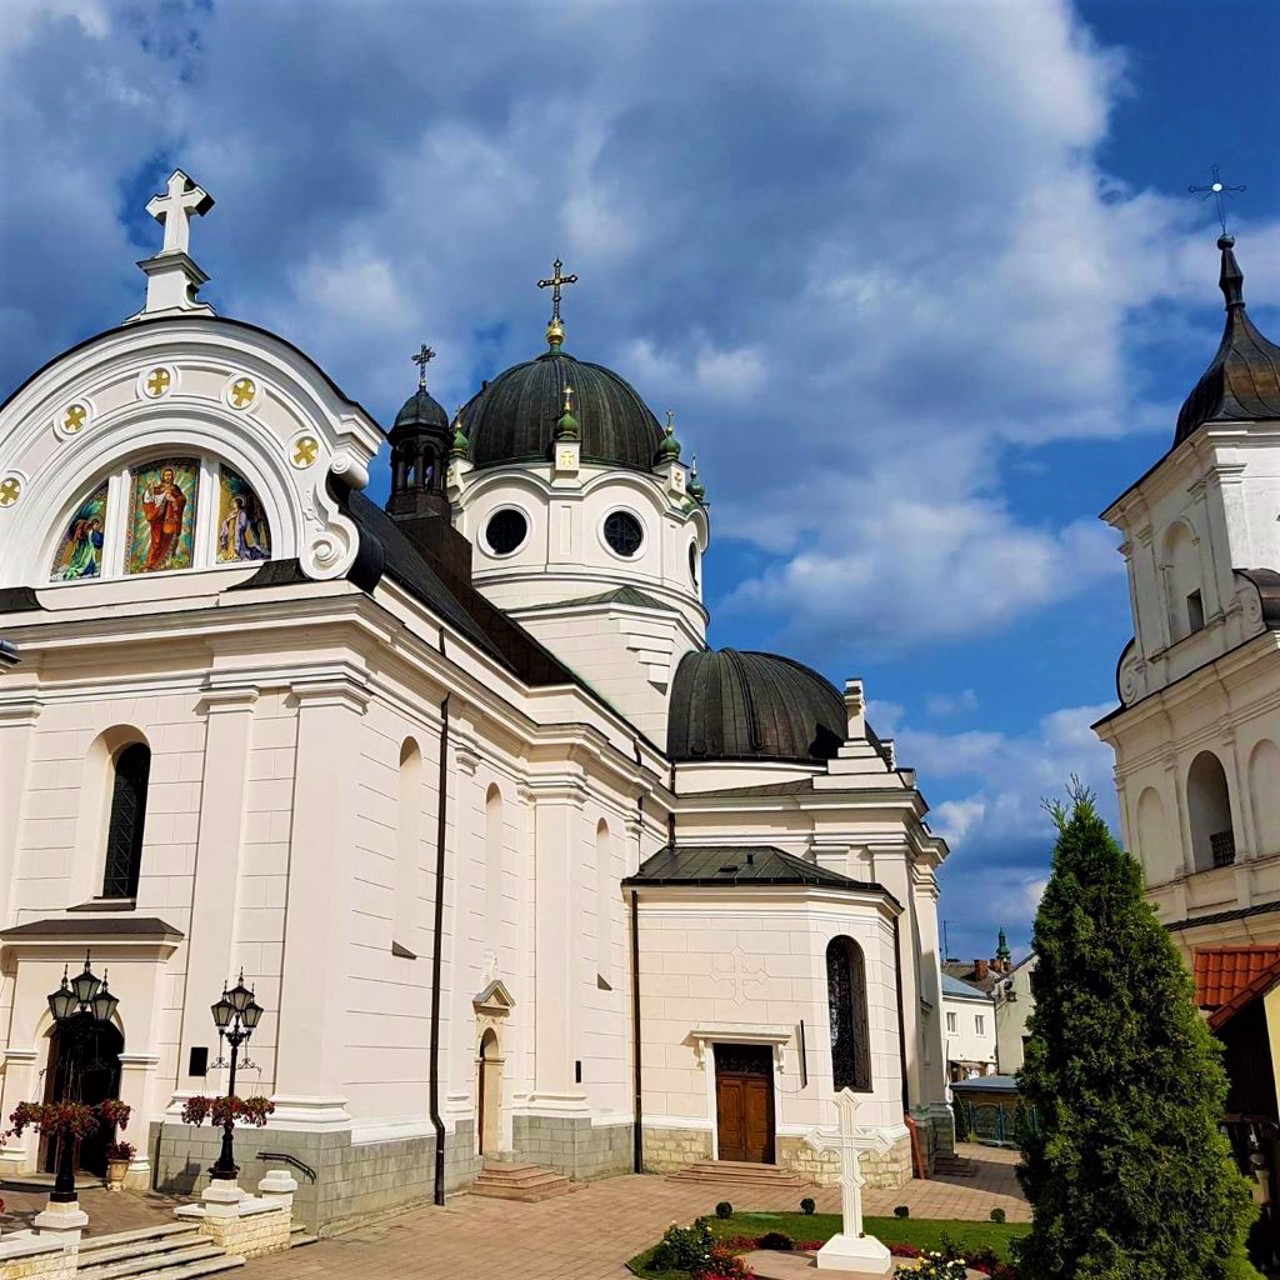 Basilian Monastery, Zhovkva